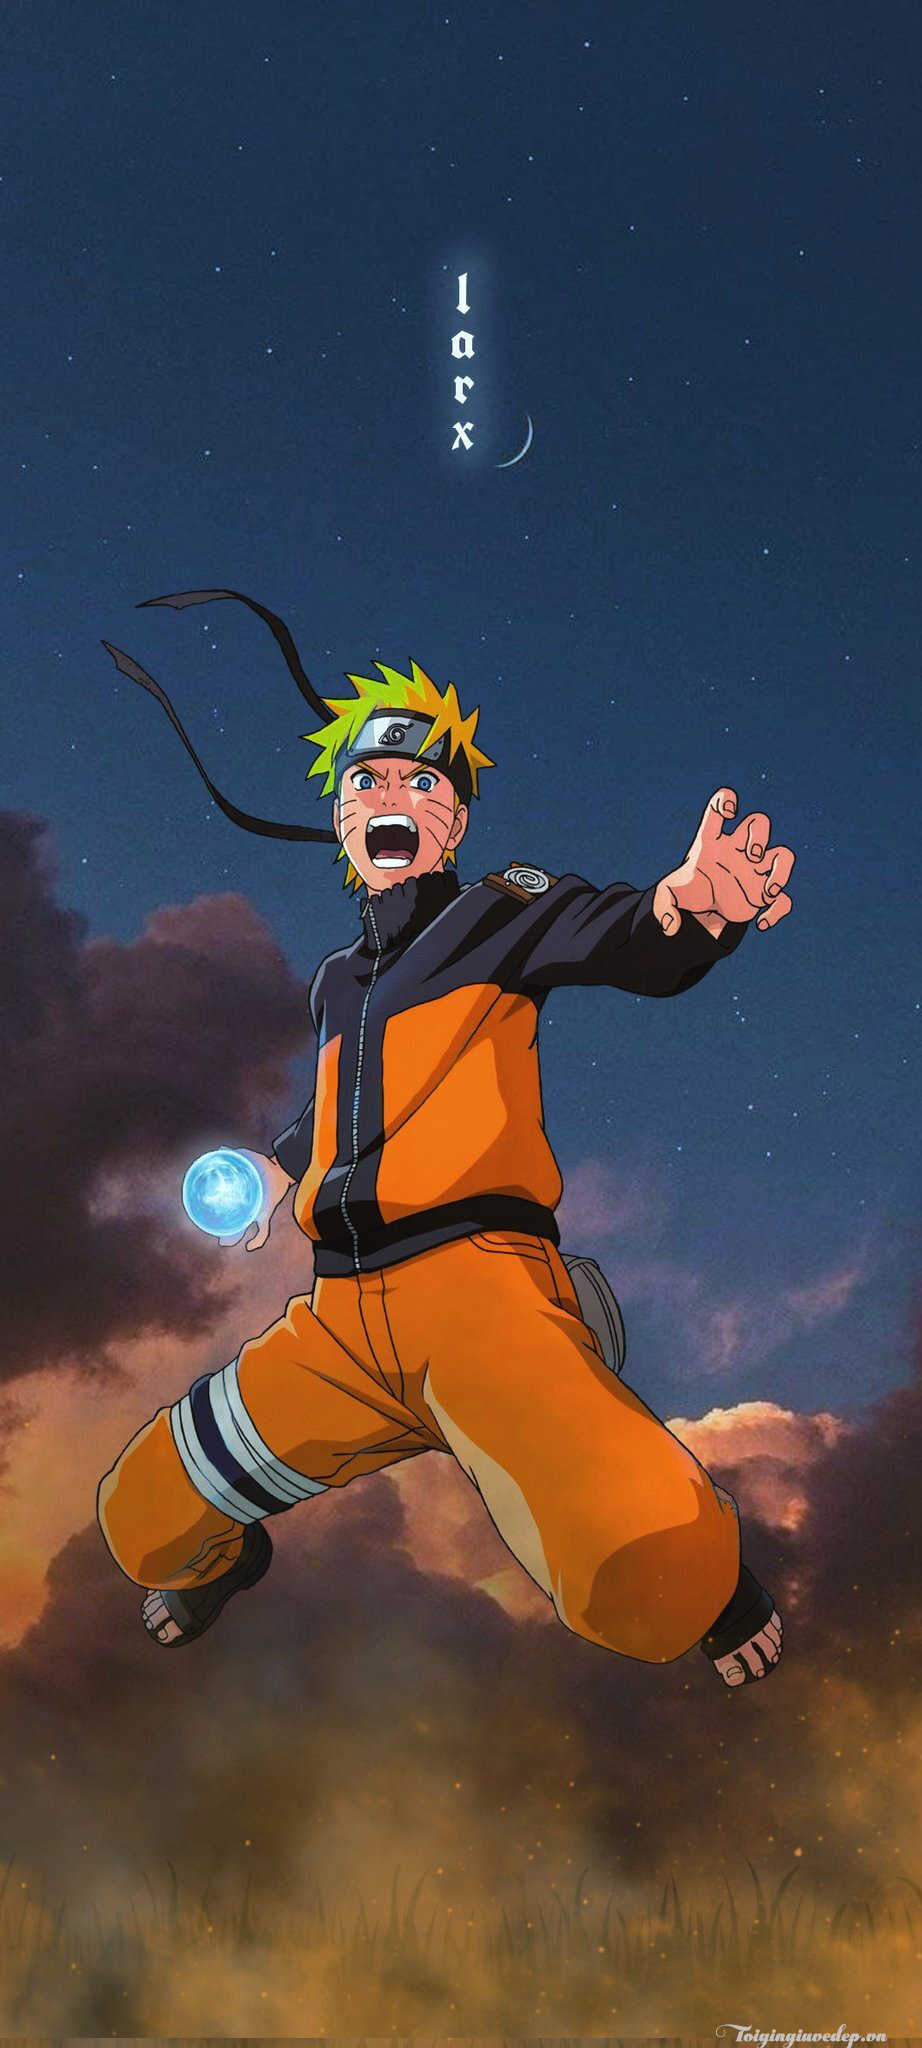 50 Hình Ảnh Naruto 3D Đẹp Ngầu KHÔNG TẢI TIẾC GHÊ  TRƯỜNG THPT BÌNH  THANH